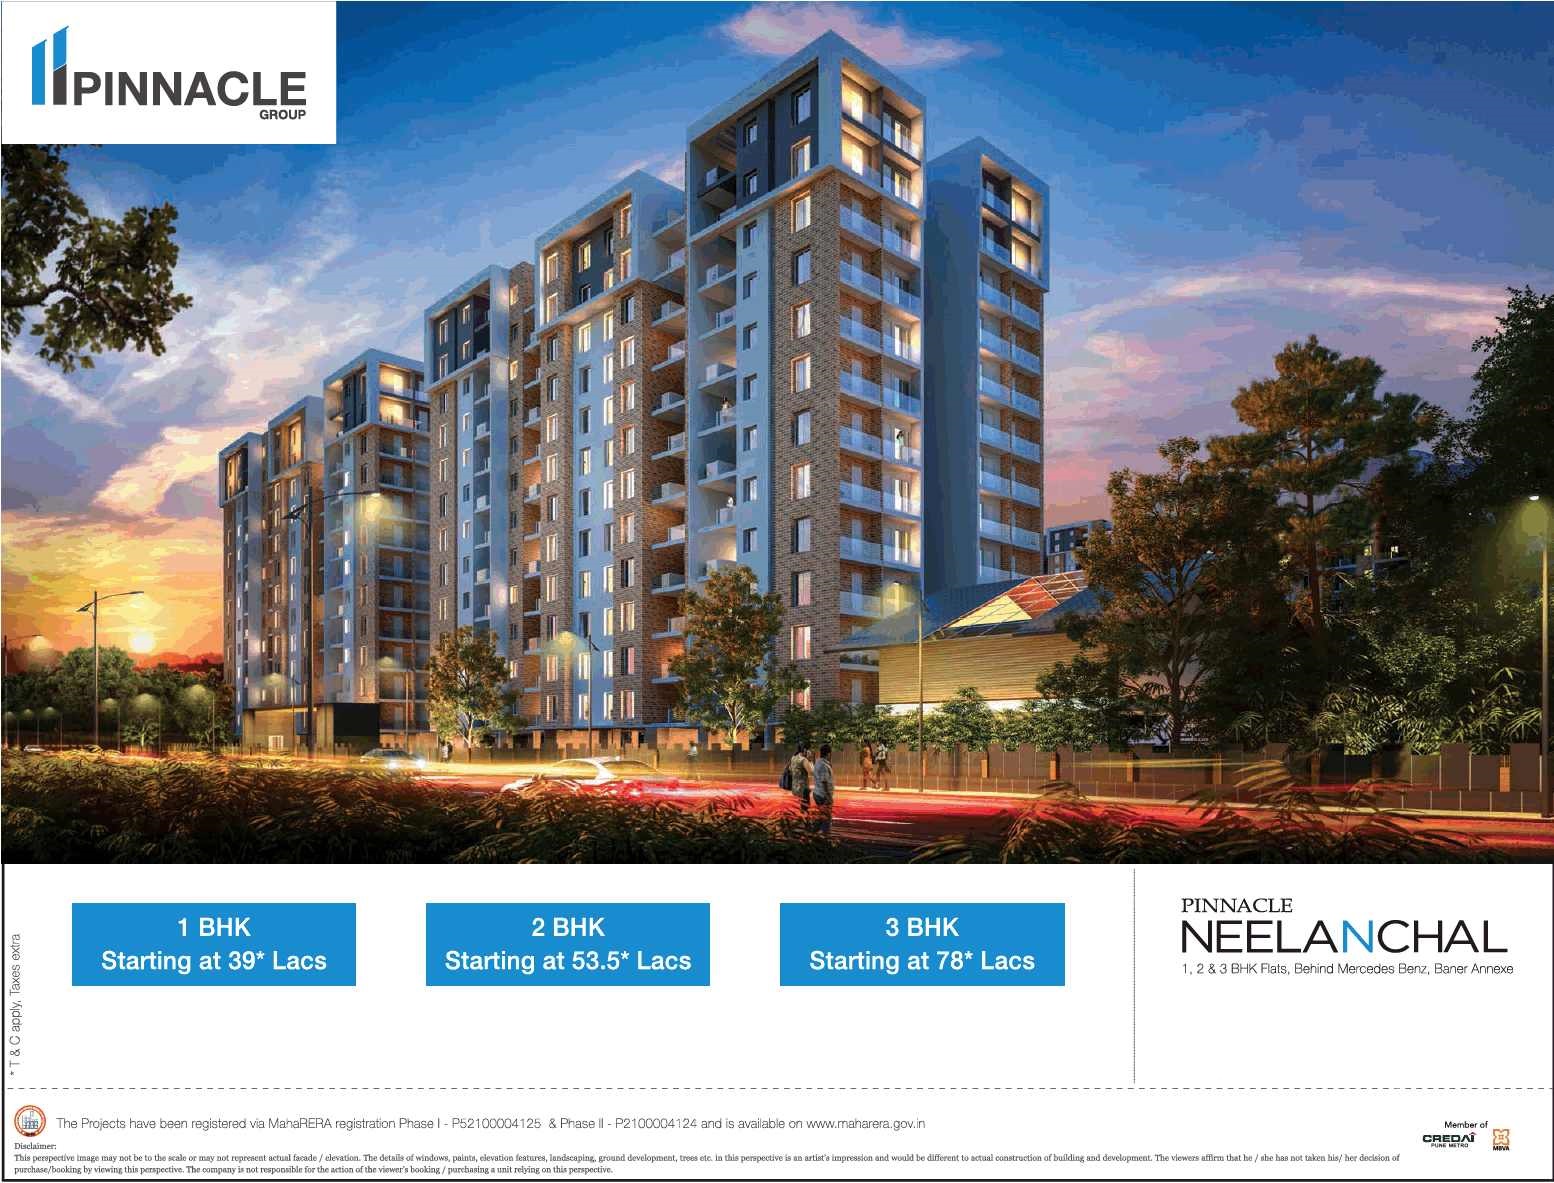 Book 1, 2 & 3 bhk apartments at Pinnacle Neelanchal in Pune Update